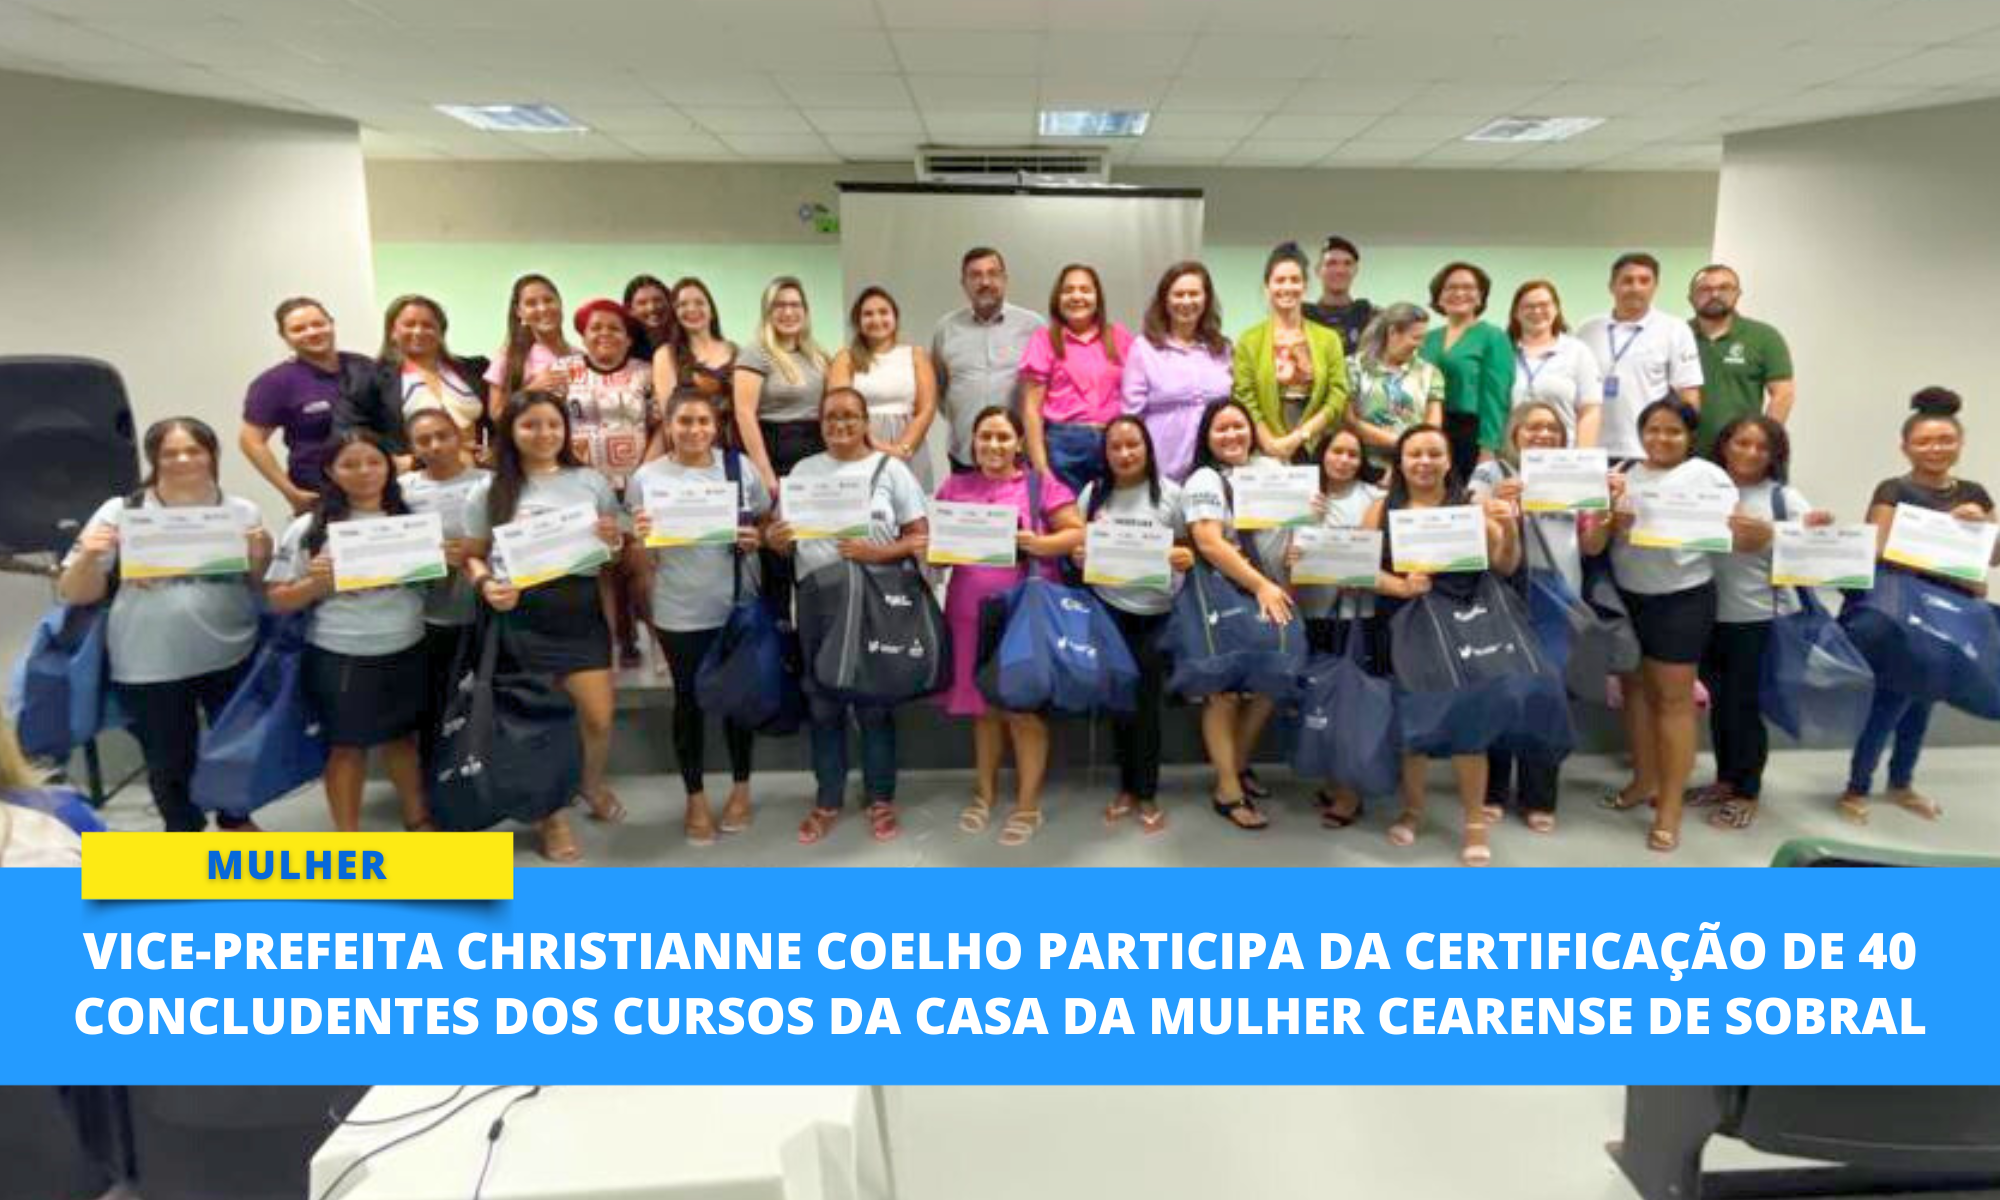 Vice-prefeita Christianne Coelho participa da certificação de 40 concludentes...